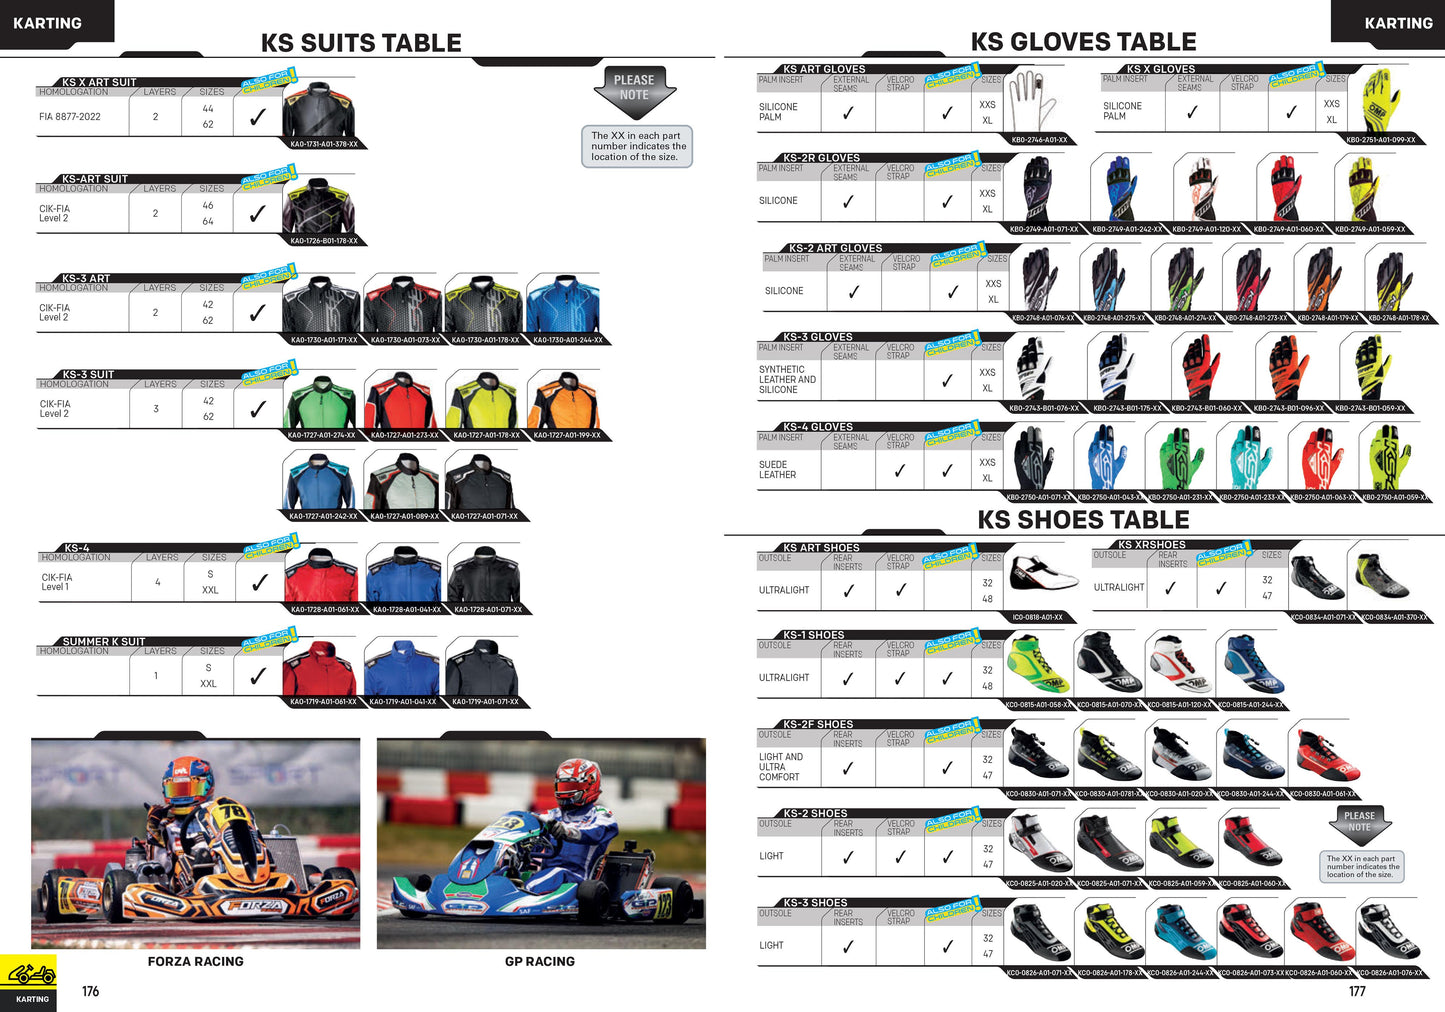 OMP KS-2 Digital Art Karting Gloves KS2 Kart Modern Printed Design in 6 Colours